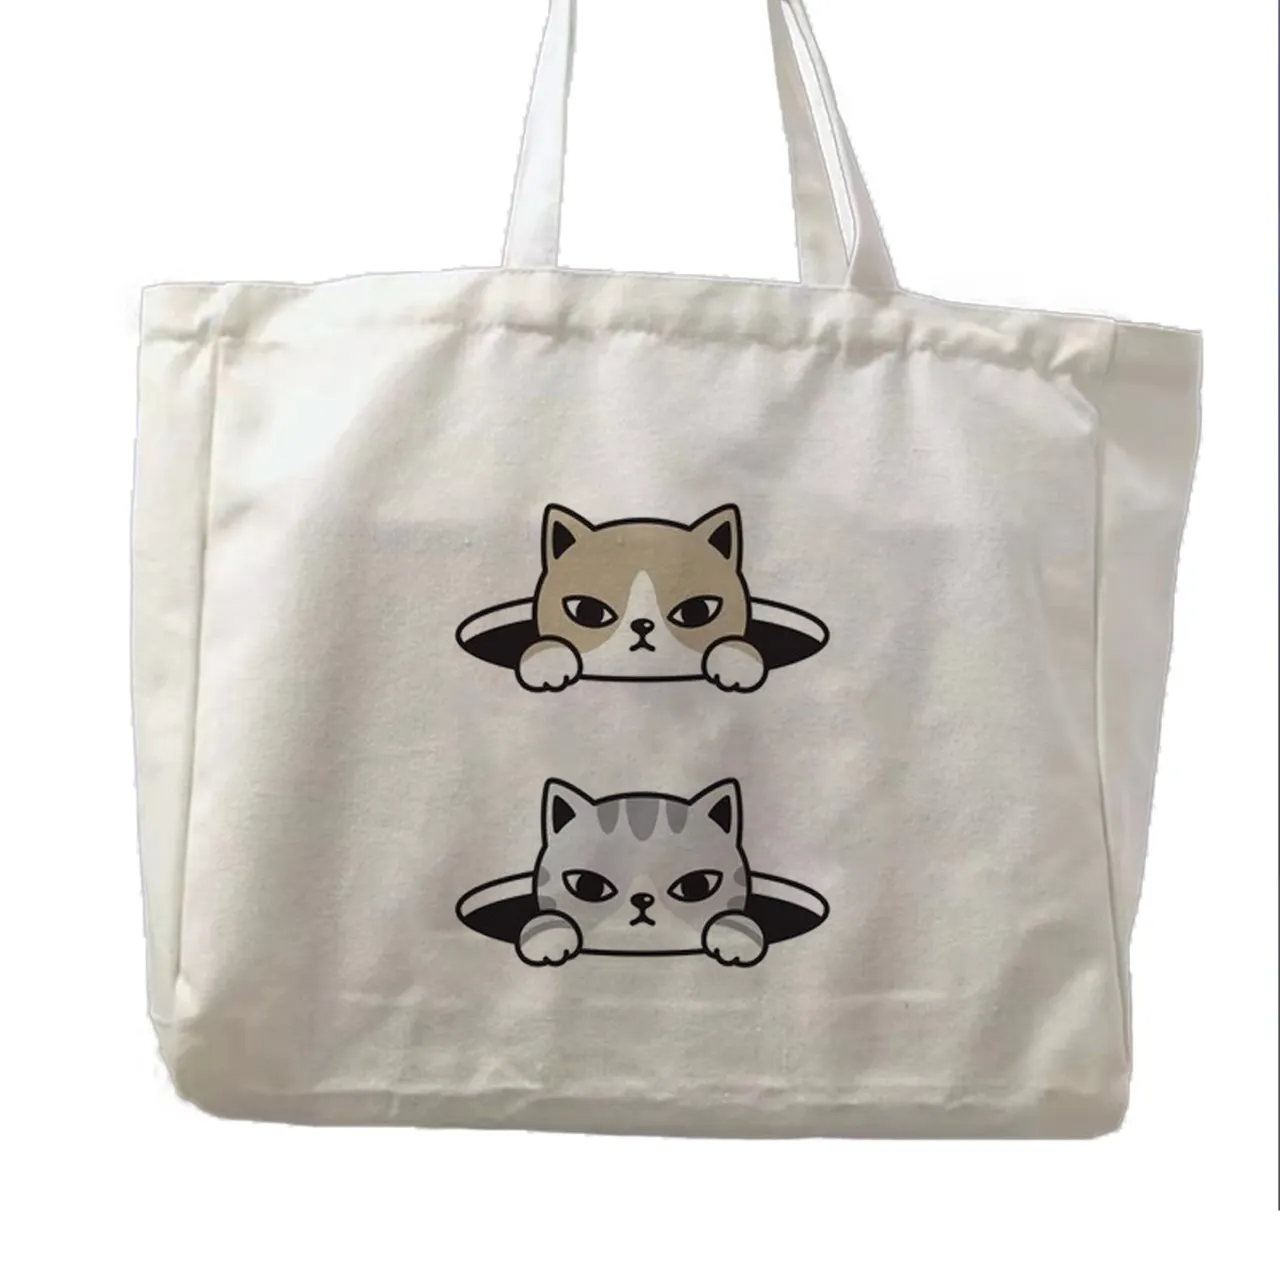 حقيبة قماشية ناعمة مخصصة للتسوق، حقيبة جراب قطة، حقائب جراب قماشية عالية الجودة للبيع بالجملة